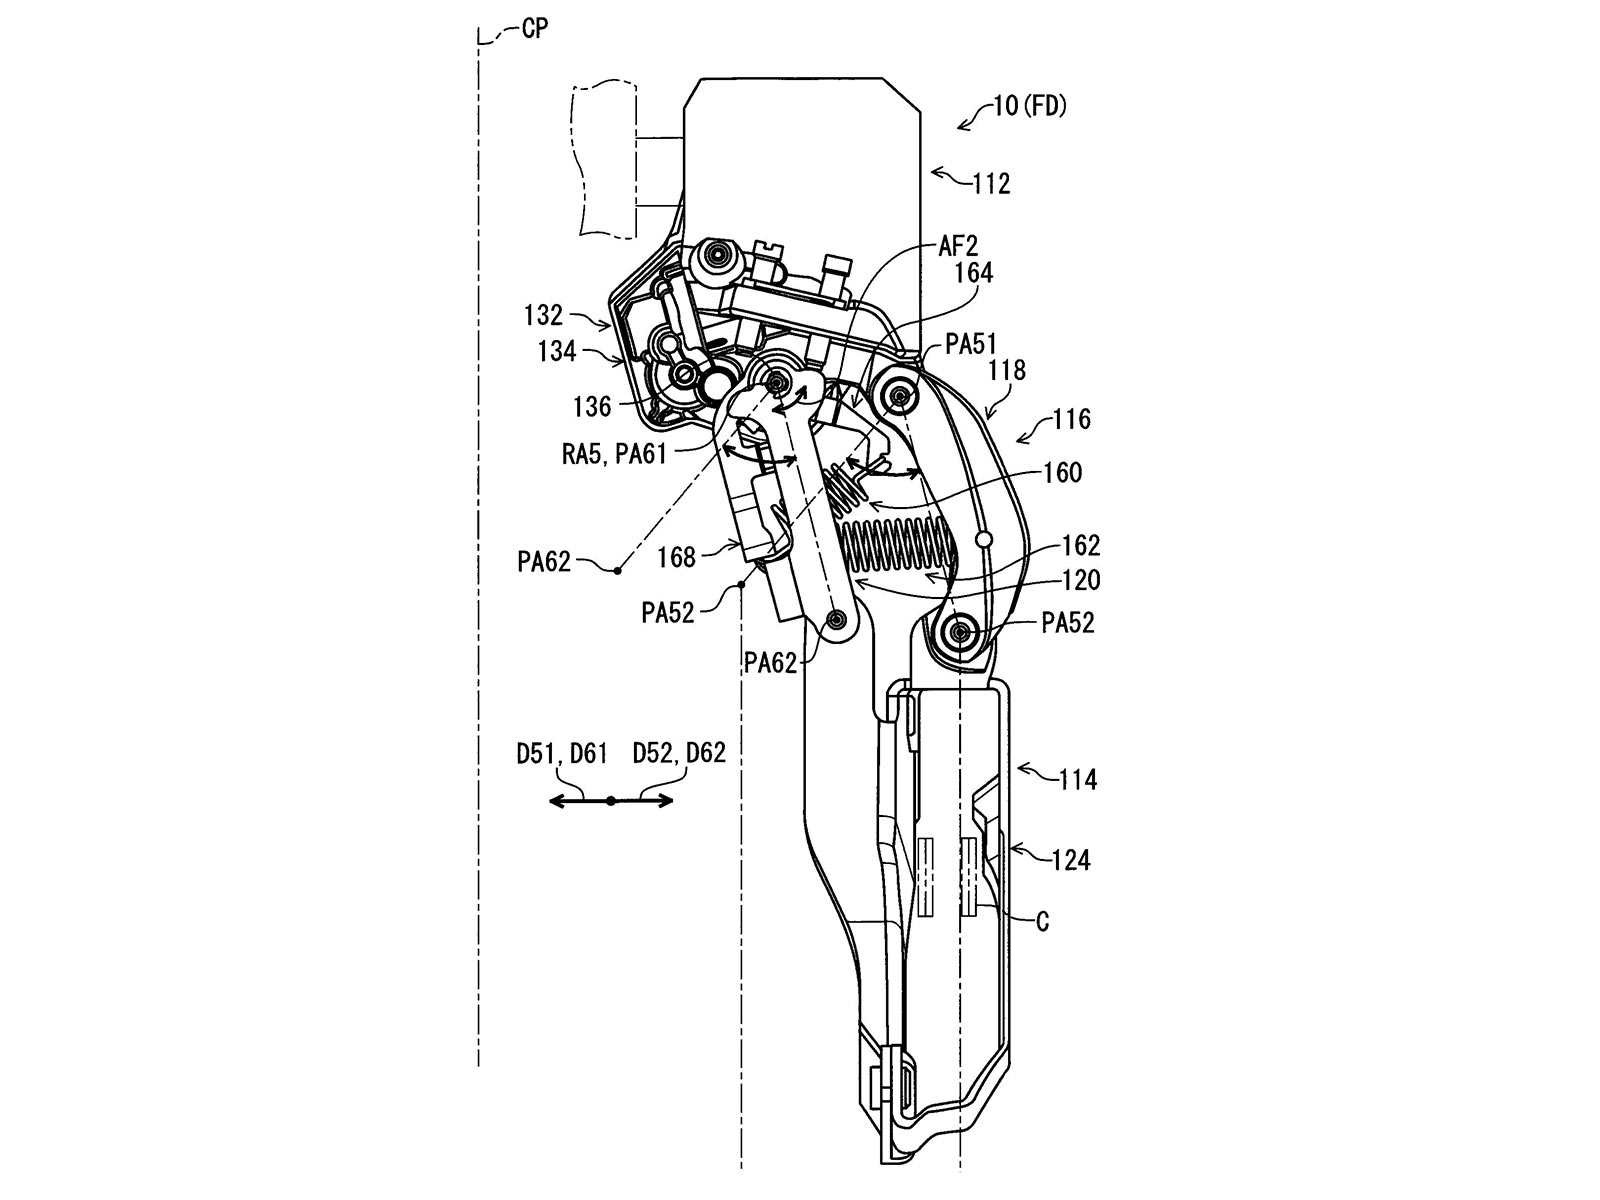 Concetto di prototipo di deragliatore a cambio elettronico galleggiante resistente agli urti con brevetto Shimano Di2, deragliatore anteriore